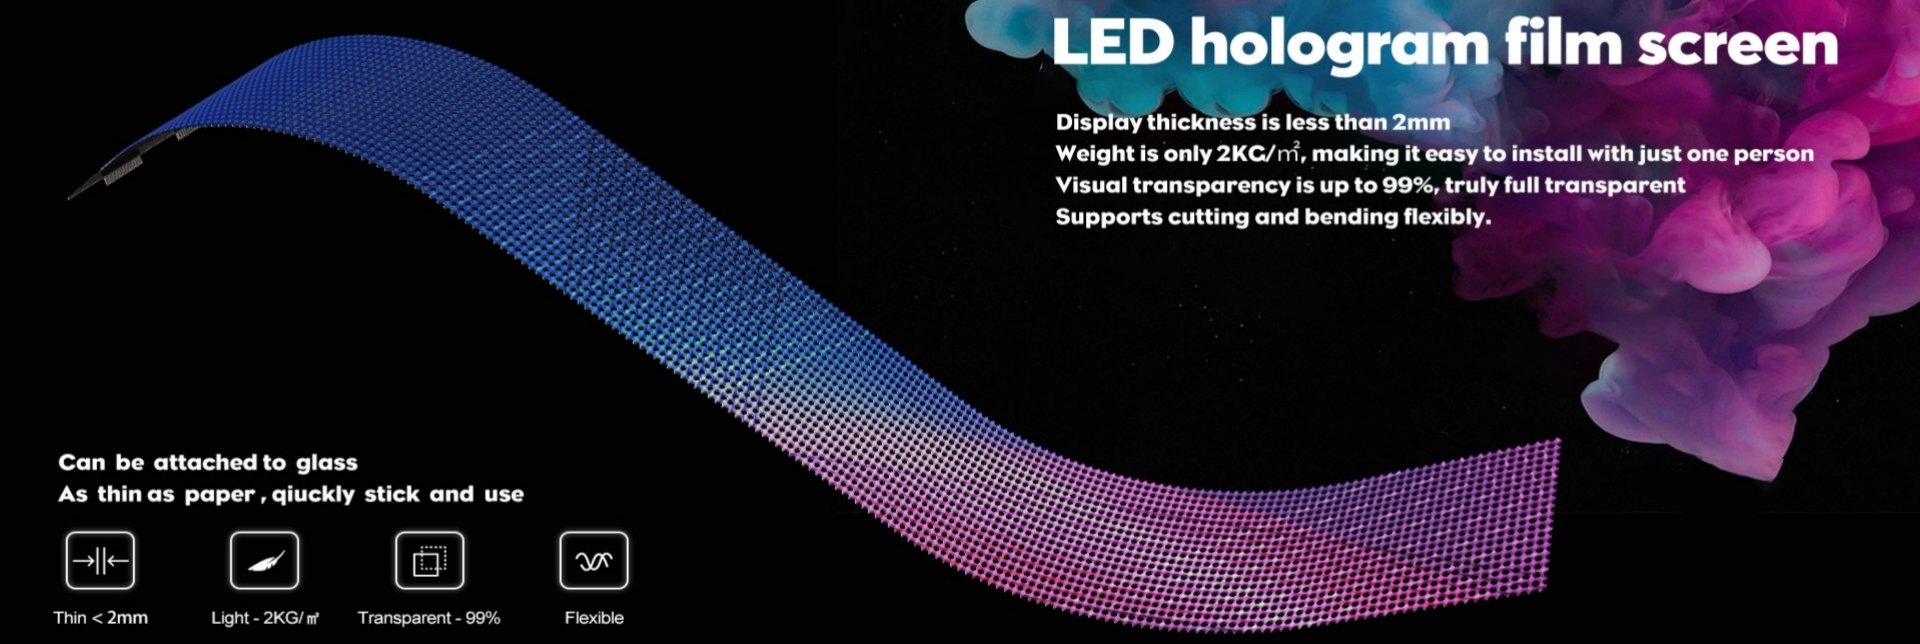 przezroczysty baner wideo LED